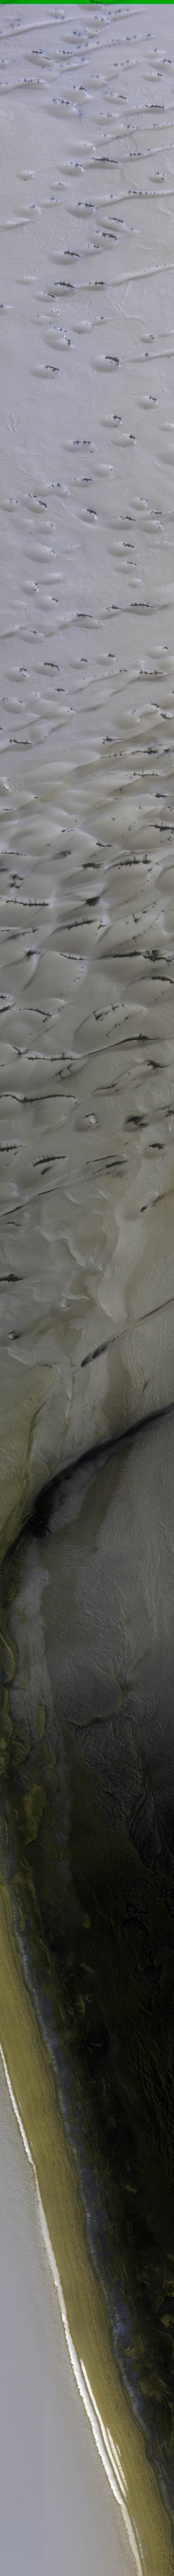 Icy Northern Dunes (ESP_017043_2640)